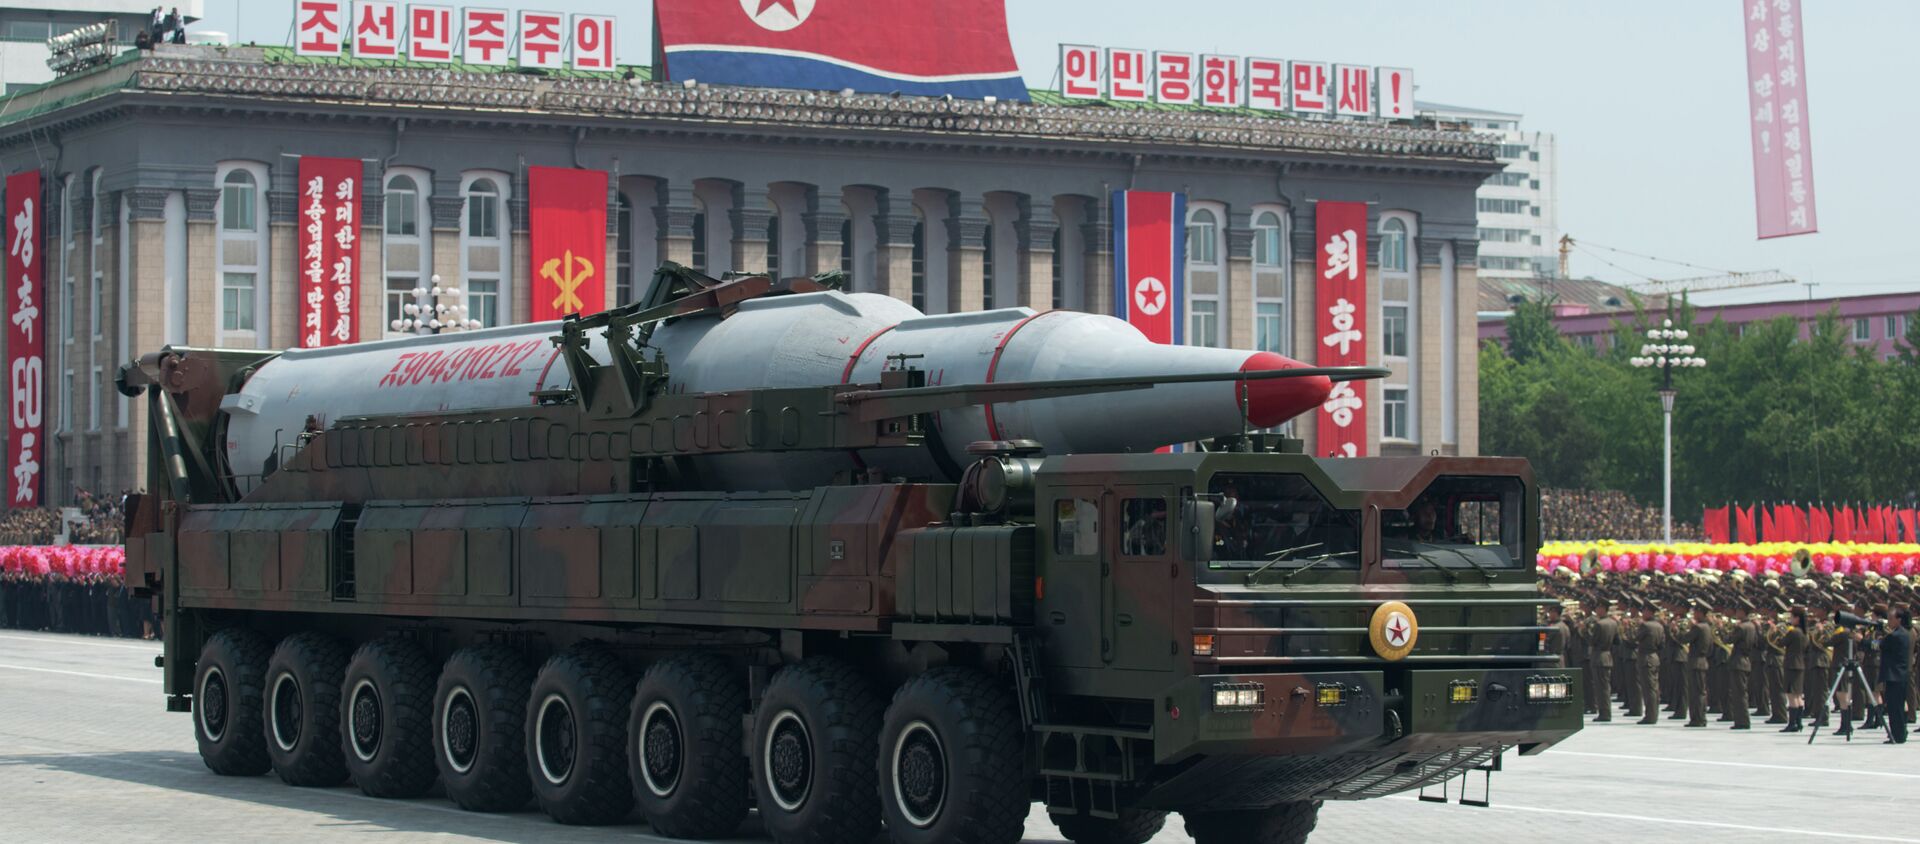 Postoji mogućnost da Severna Koreja već poseduje 20 nuklearnih bojevih glava i ima kapacitet da udvostruči svoj arsenal do naredne godine, smatraju kineski stručnjaci za nuklearno oružje. - Sputnik Srbija, 1920, 02.03.2021